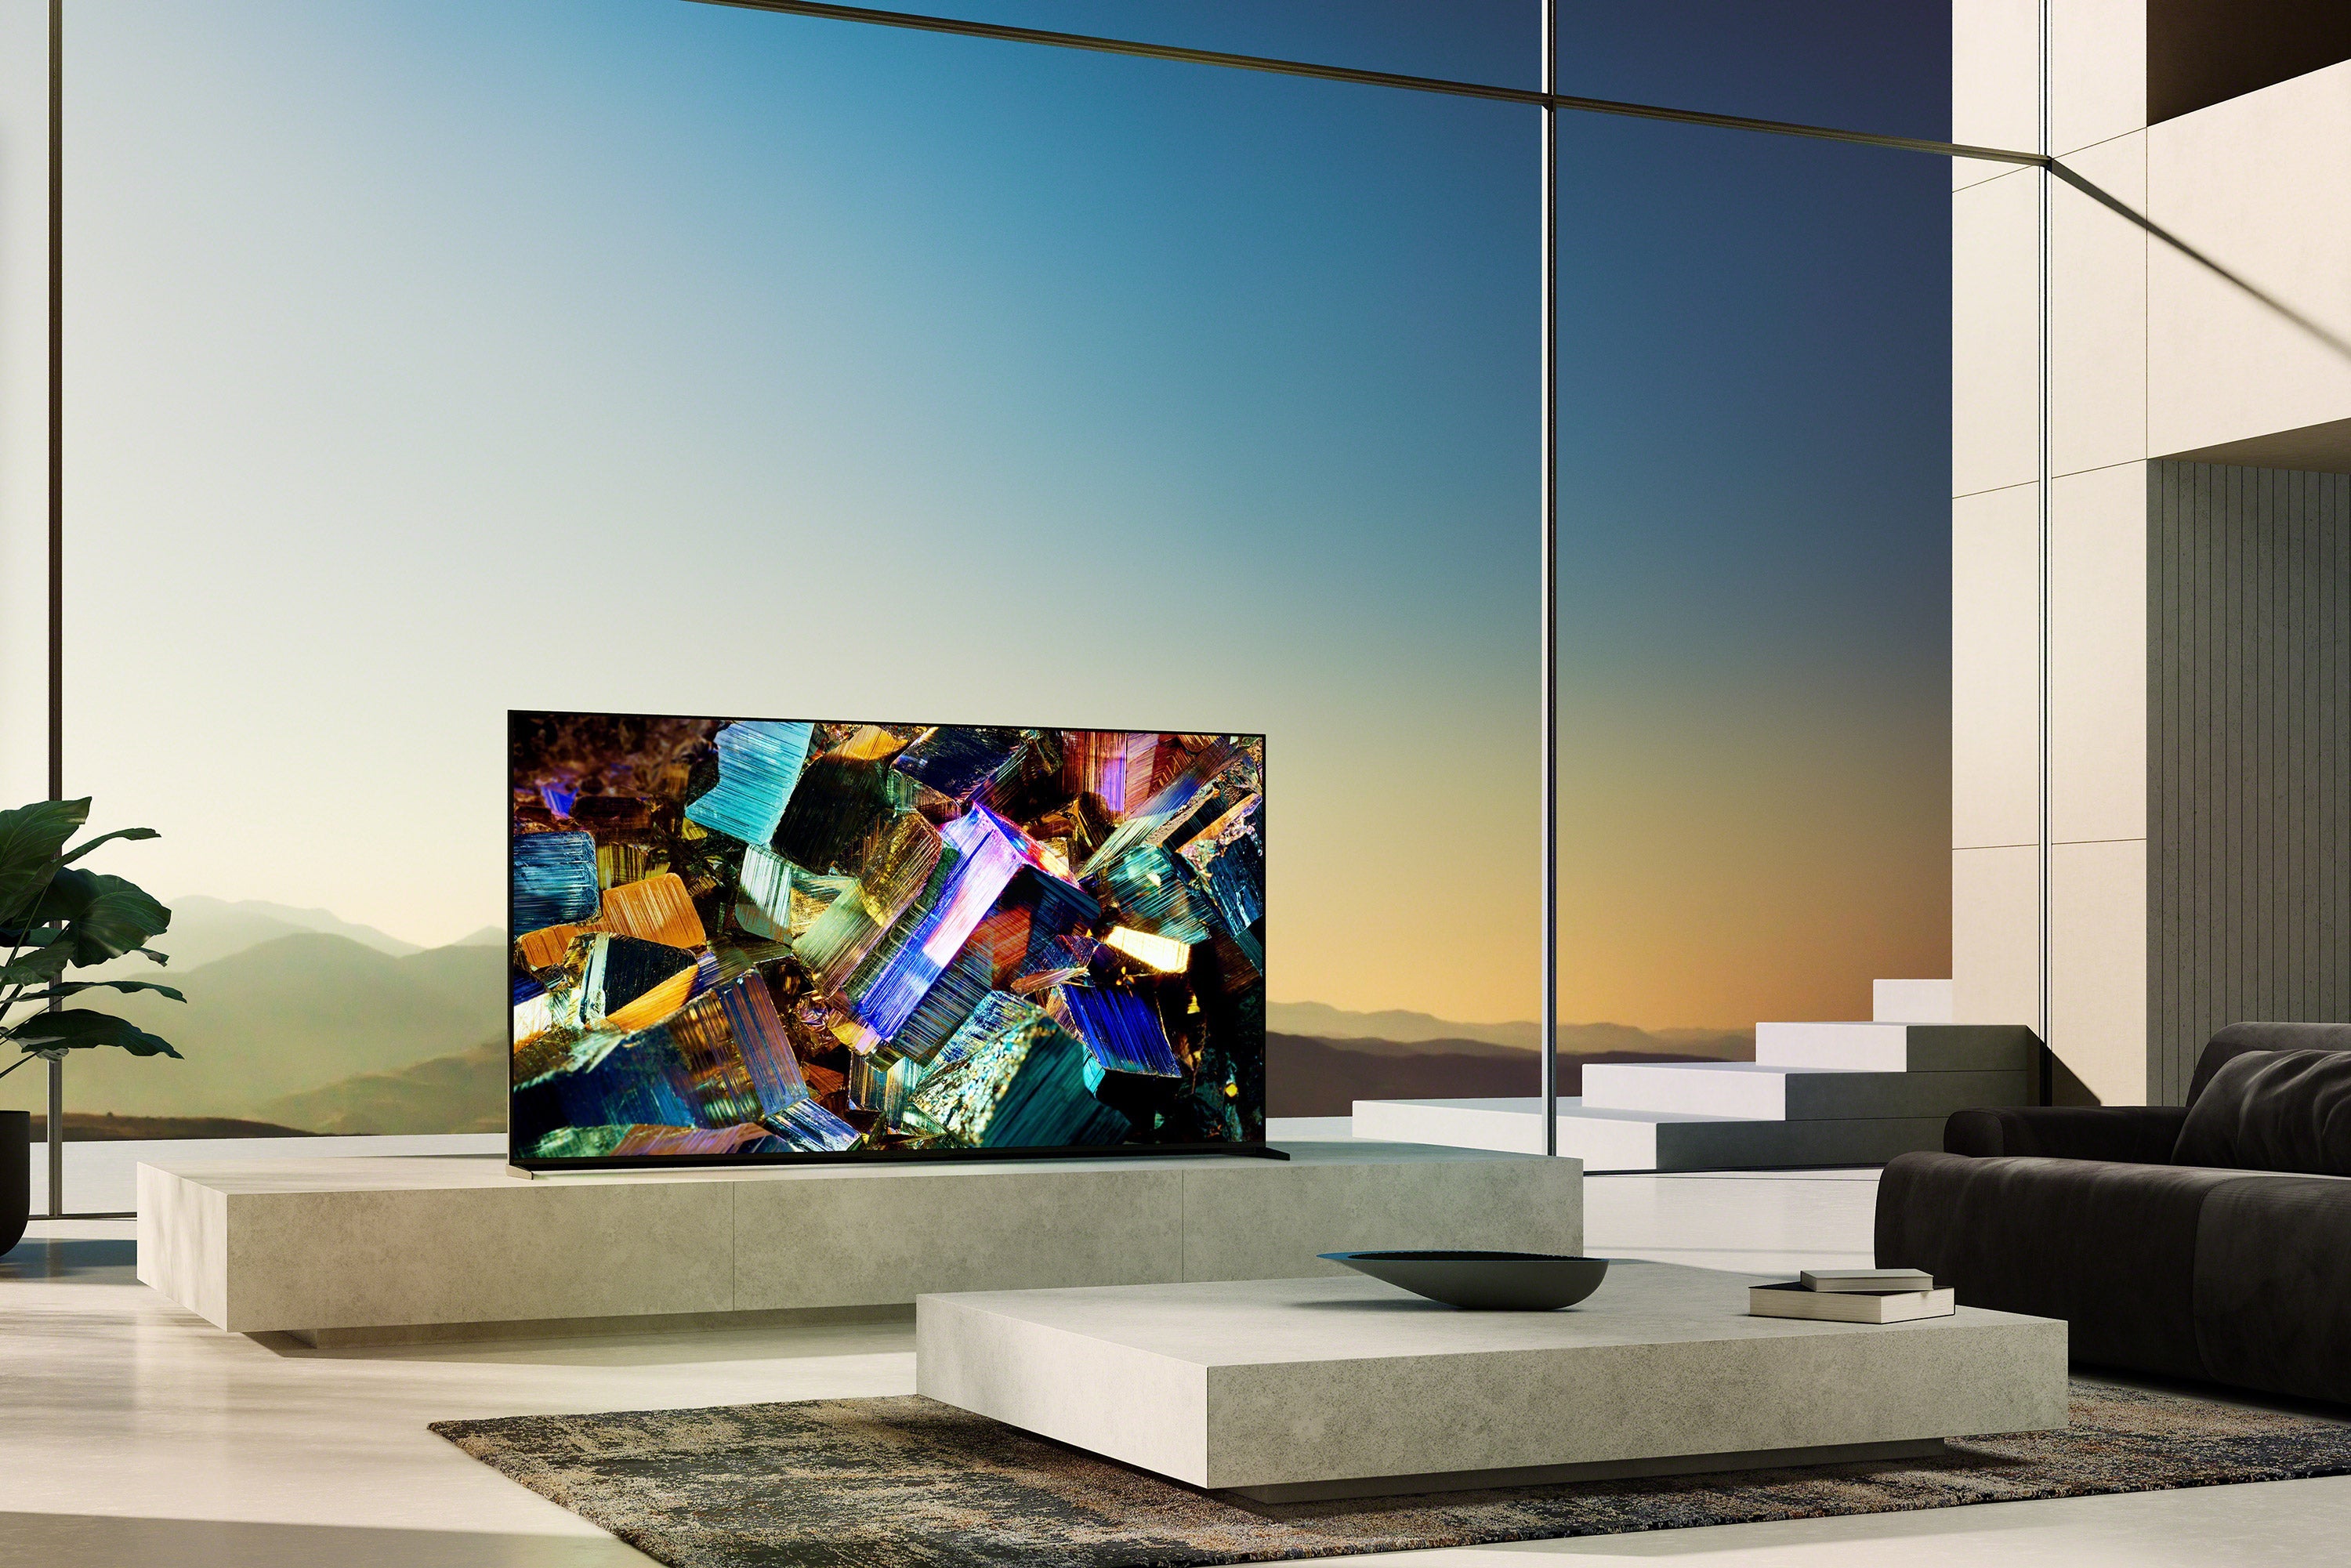 Z9K BRAVIA XR | Mini LED | 8K | High Dynamic Range (HDR) | Smart TV (Google TV)